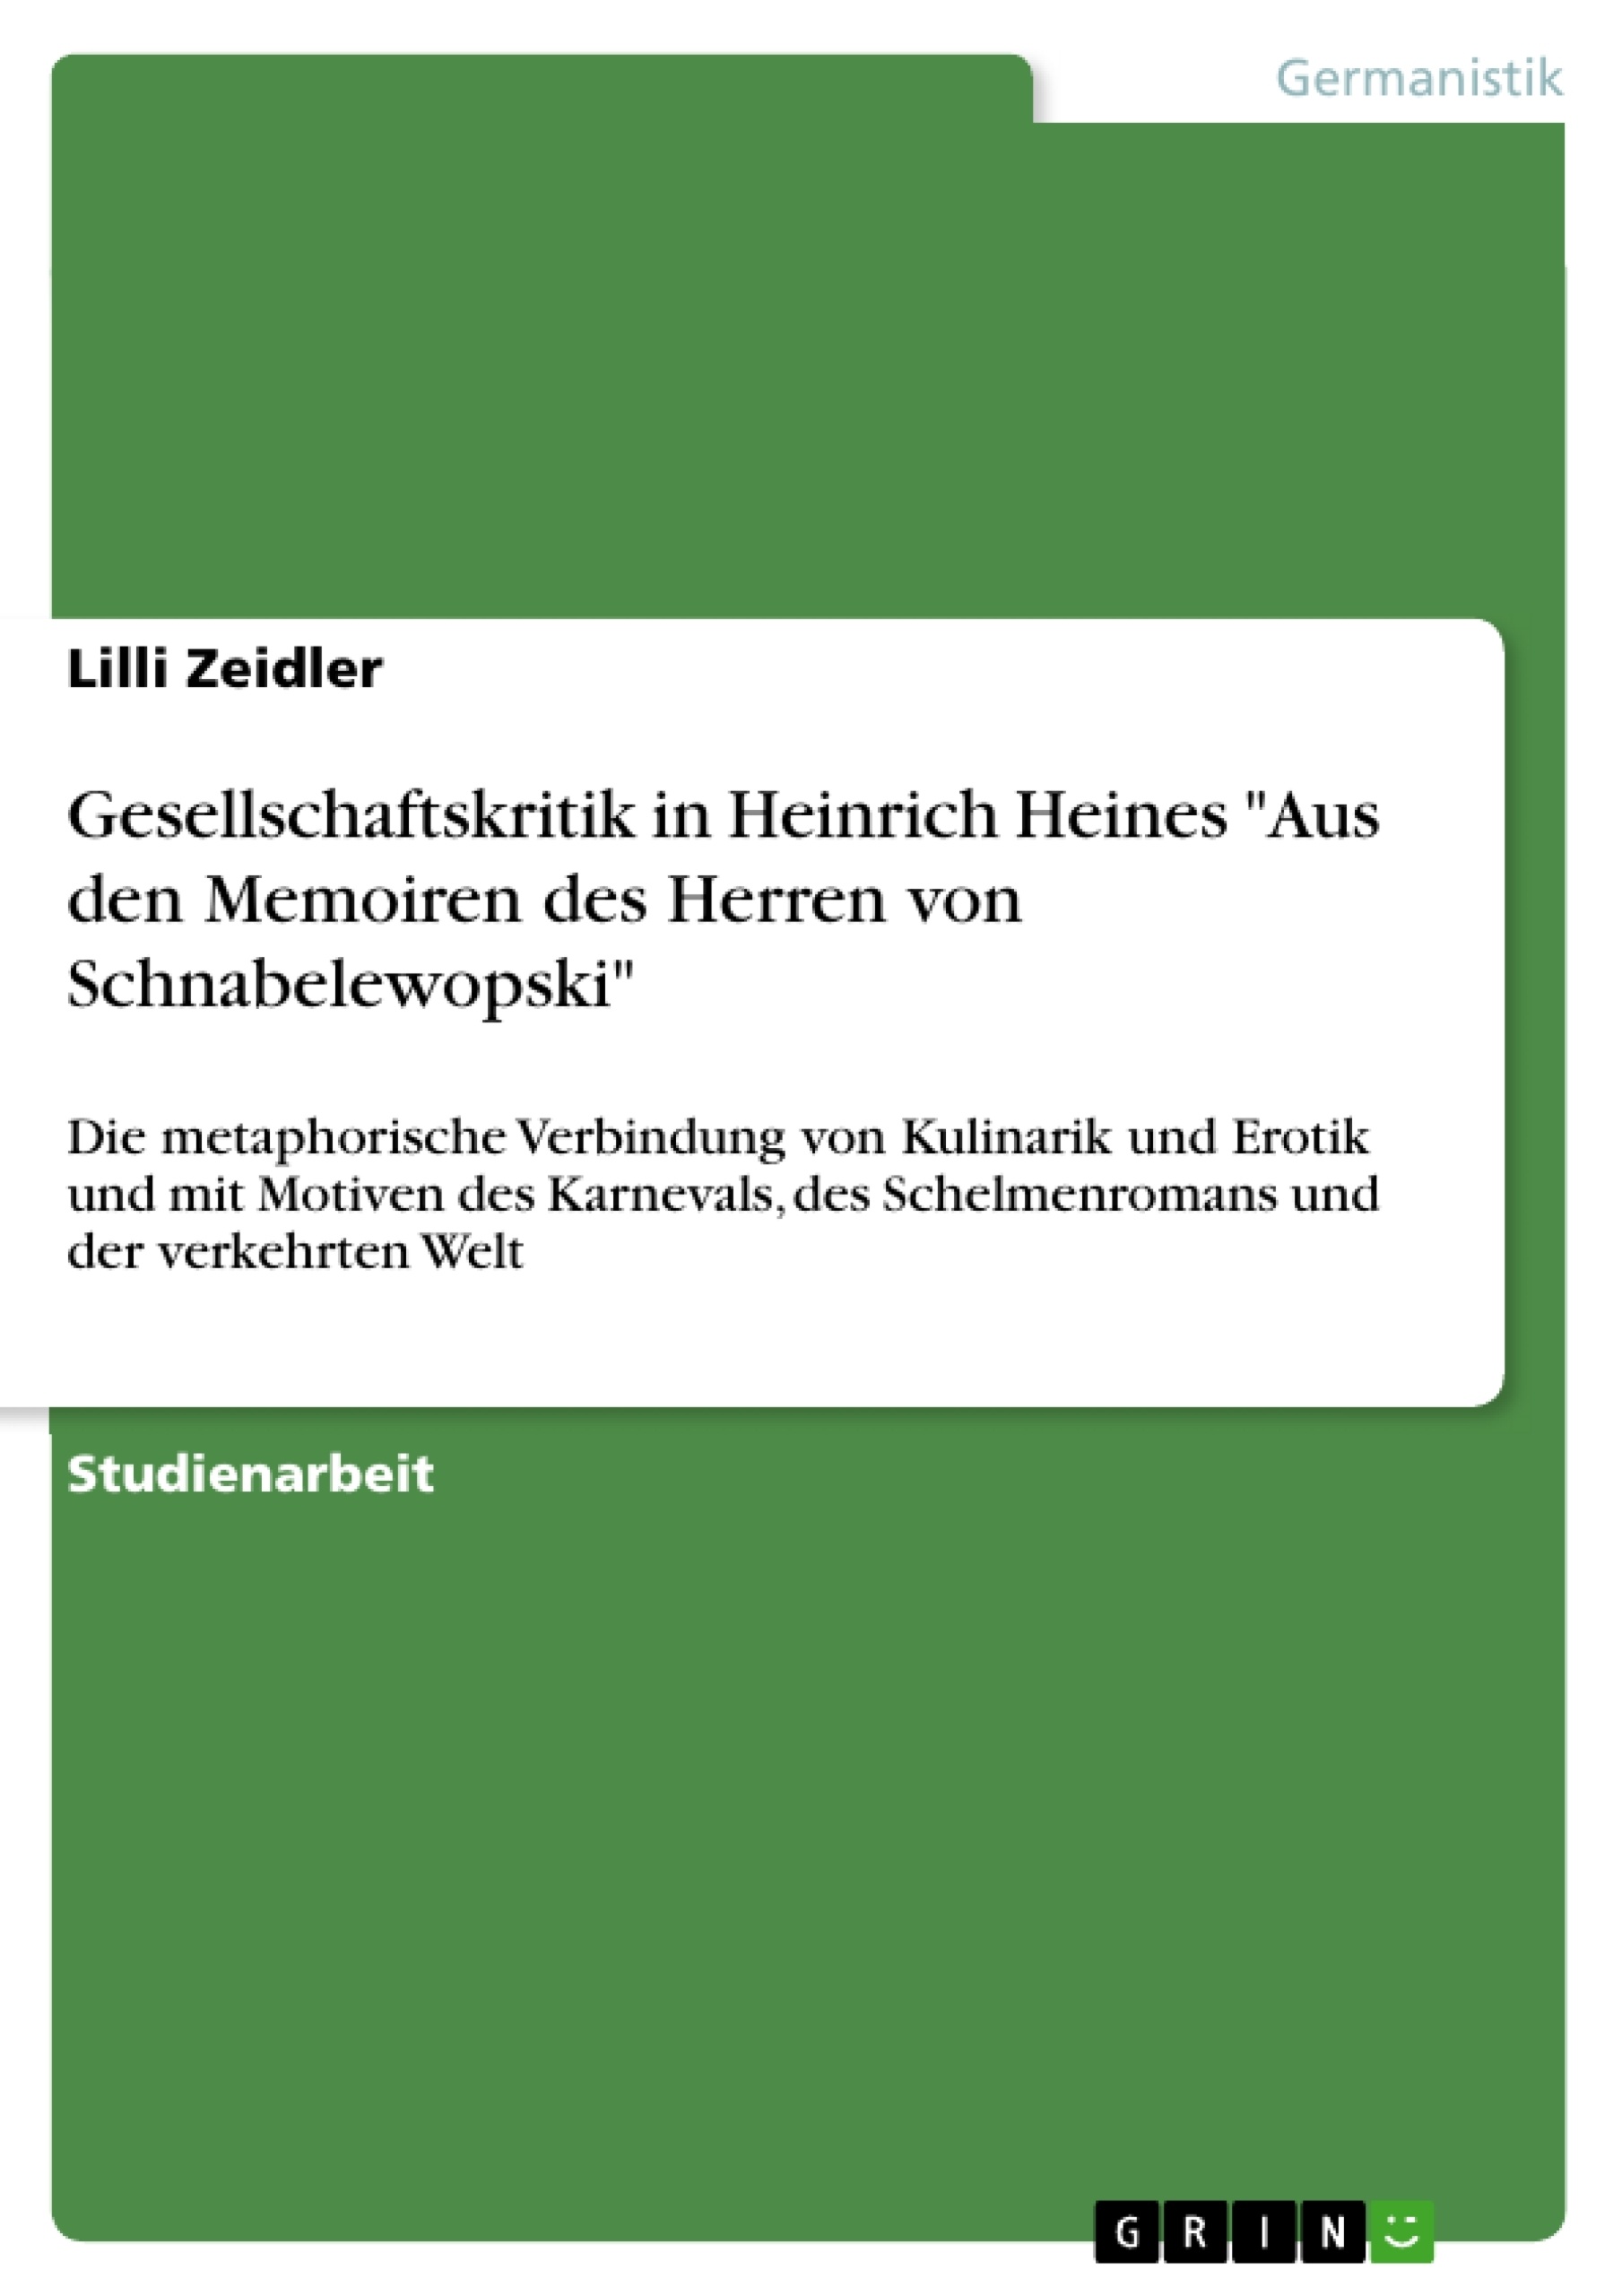 Titre: Gesellschaftskritik in Heinrich Heines "Aus den Memoiren des Herren von Schnabelewopski"